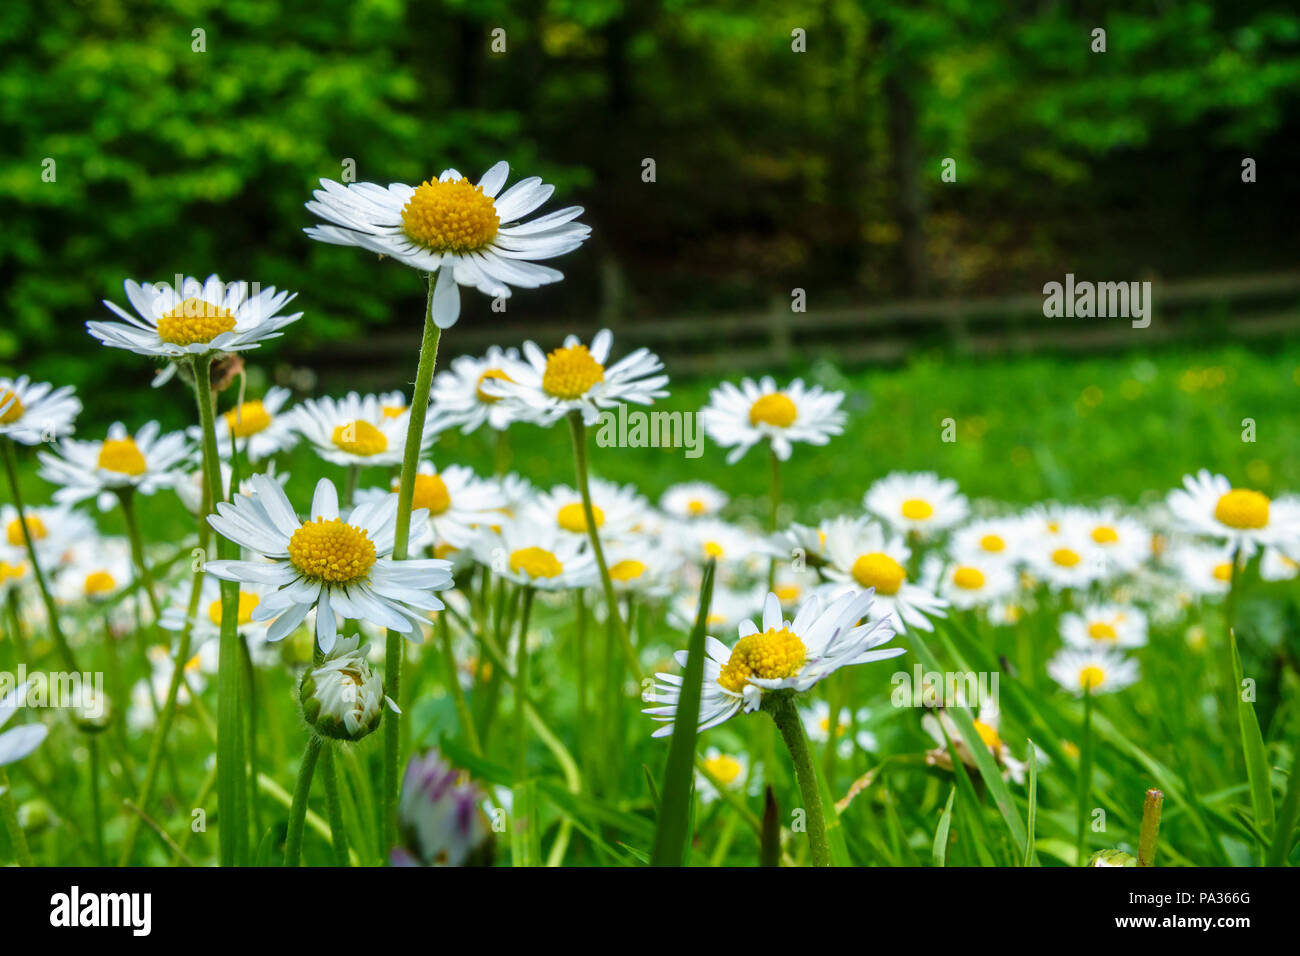 Daisy fiori che sbocciano in un prato Foto Stock